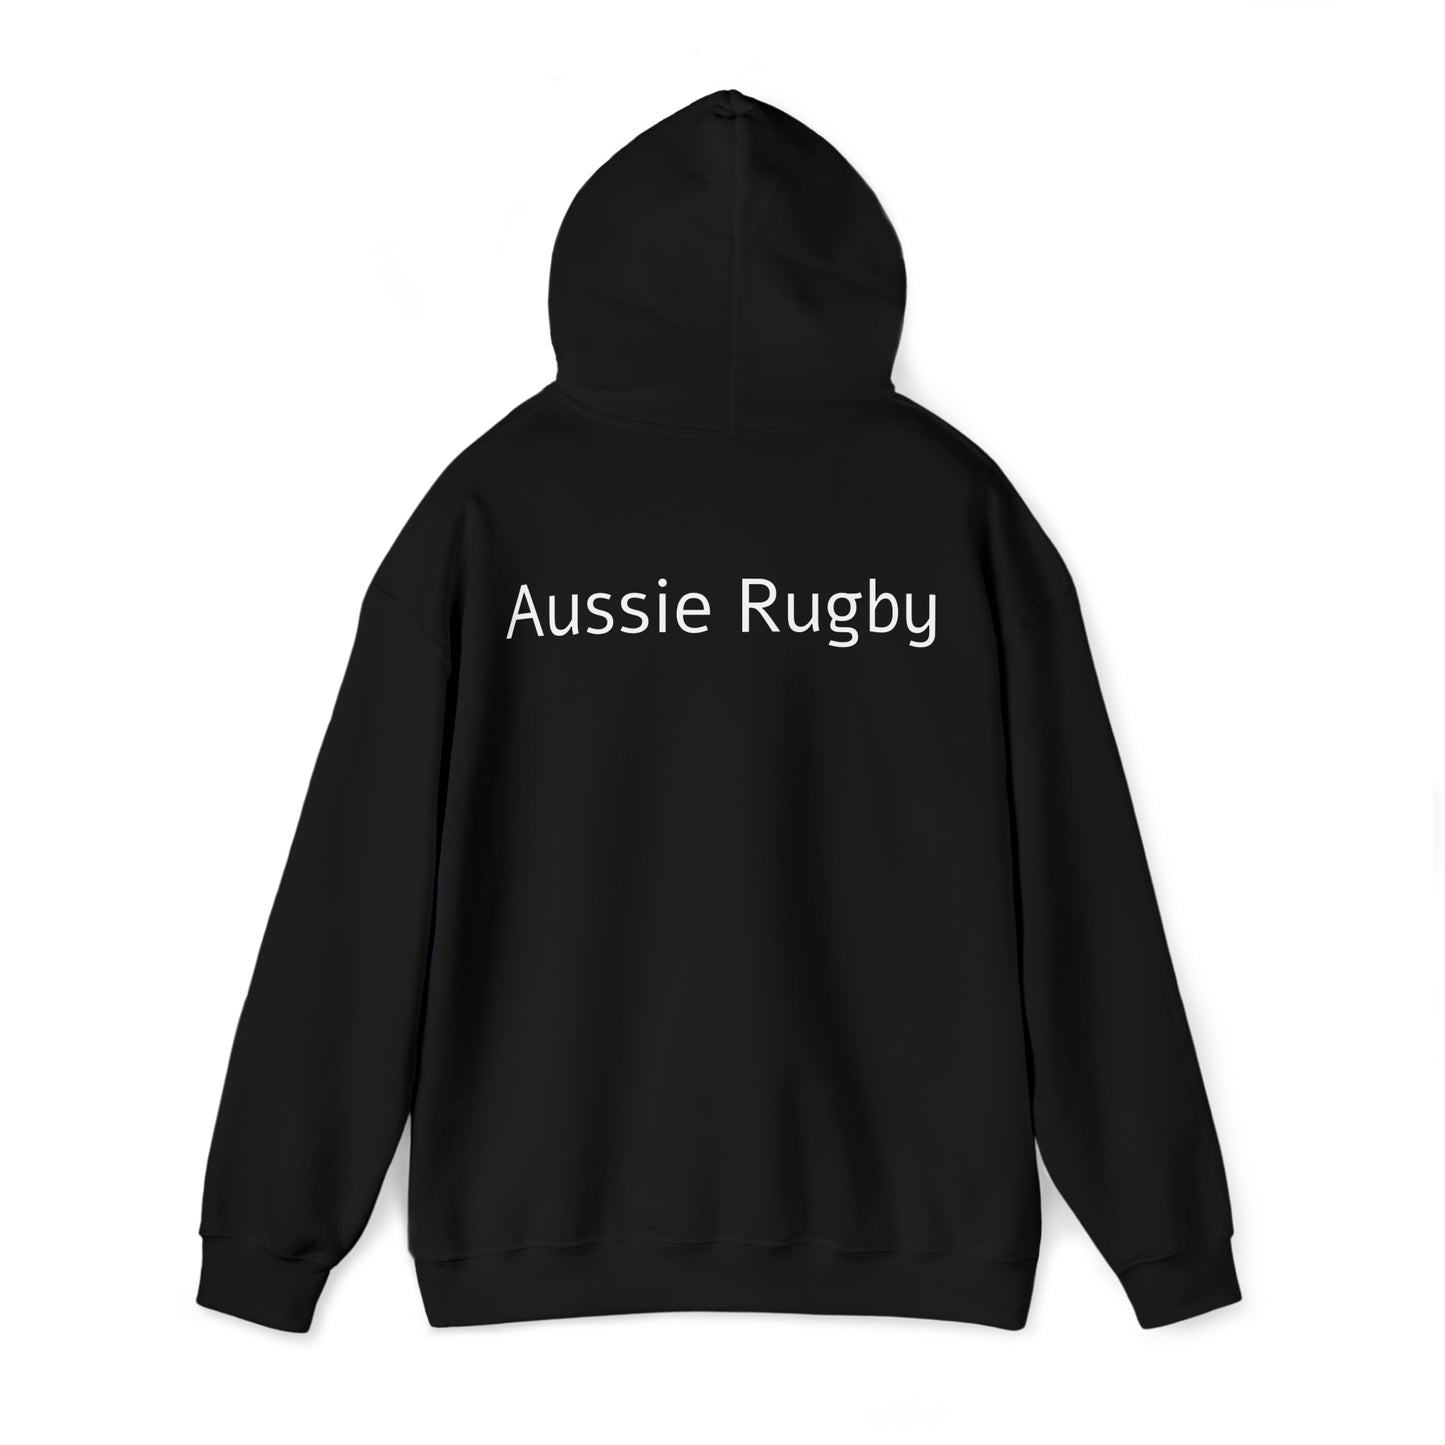 Australia lifting RWC - black hoodie